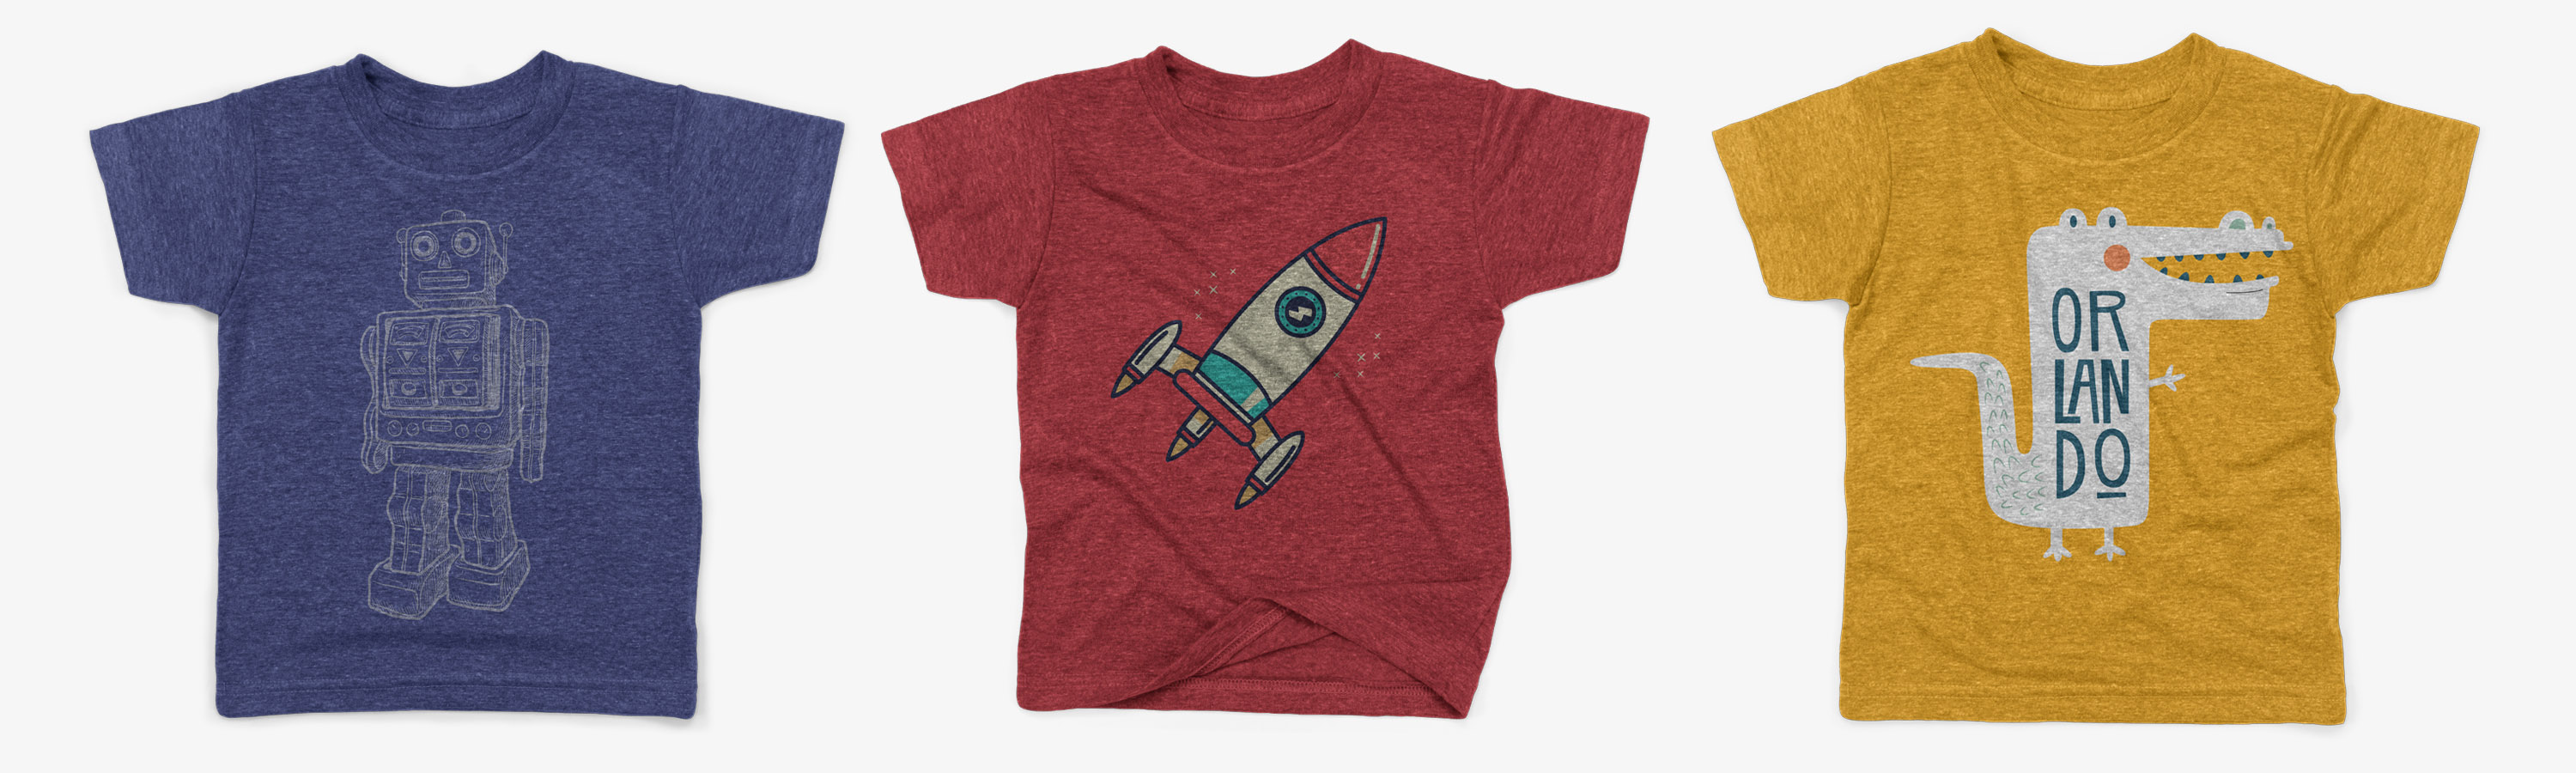 儿童T恤服装印花设计样机模板 Kids Triblend T-shirt Mockup Pack插图(2)